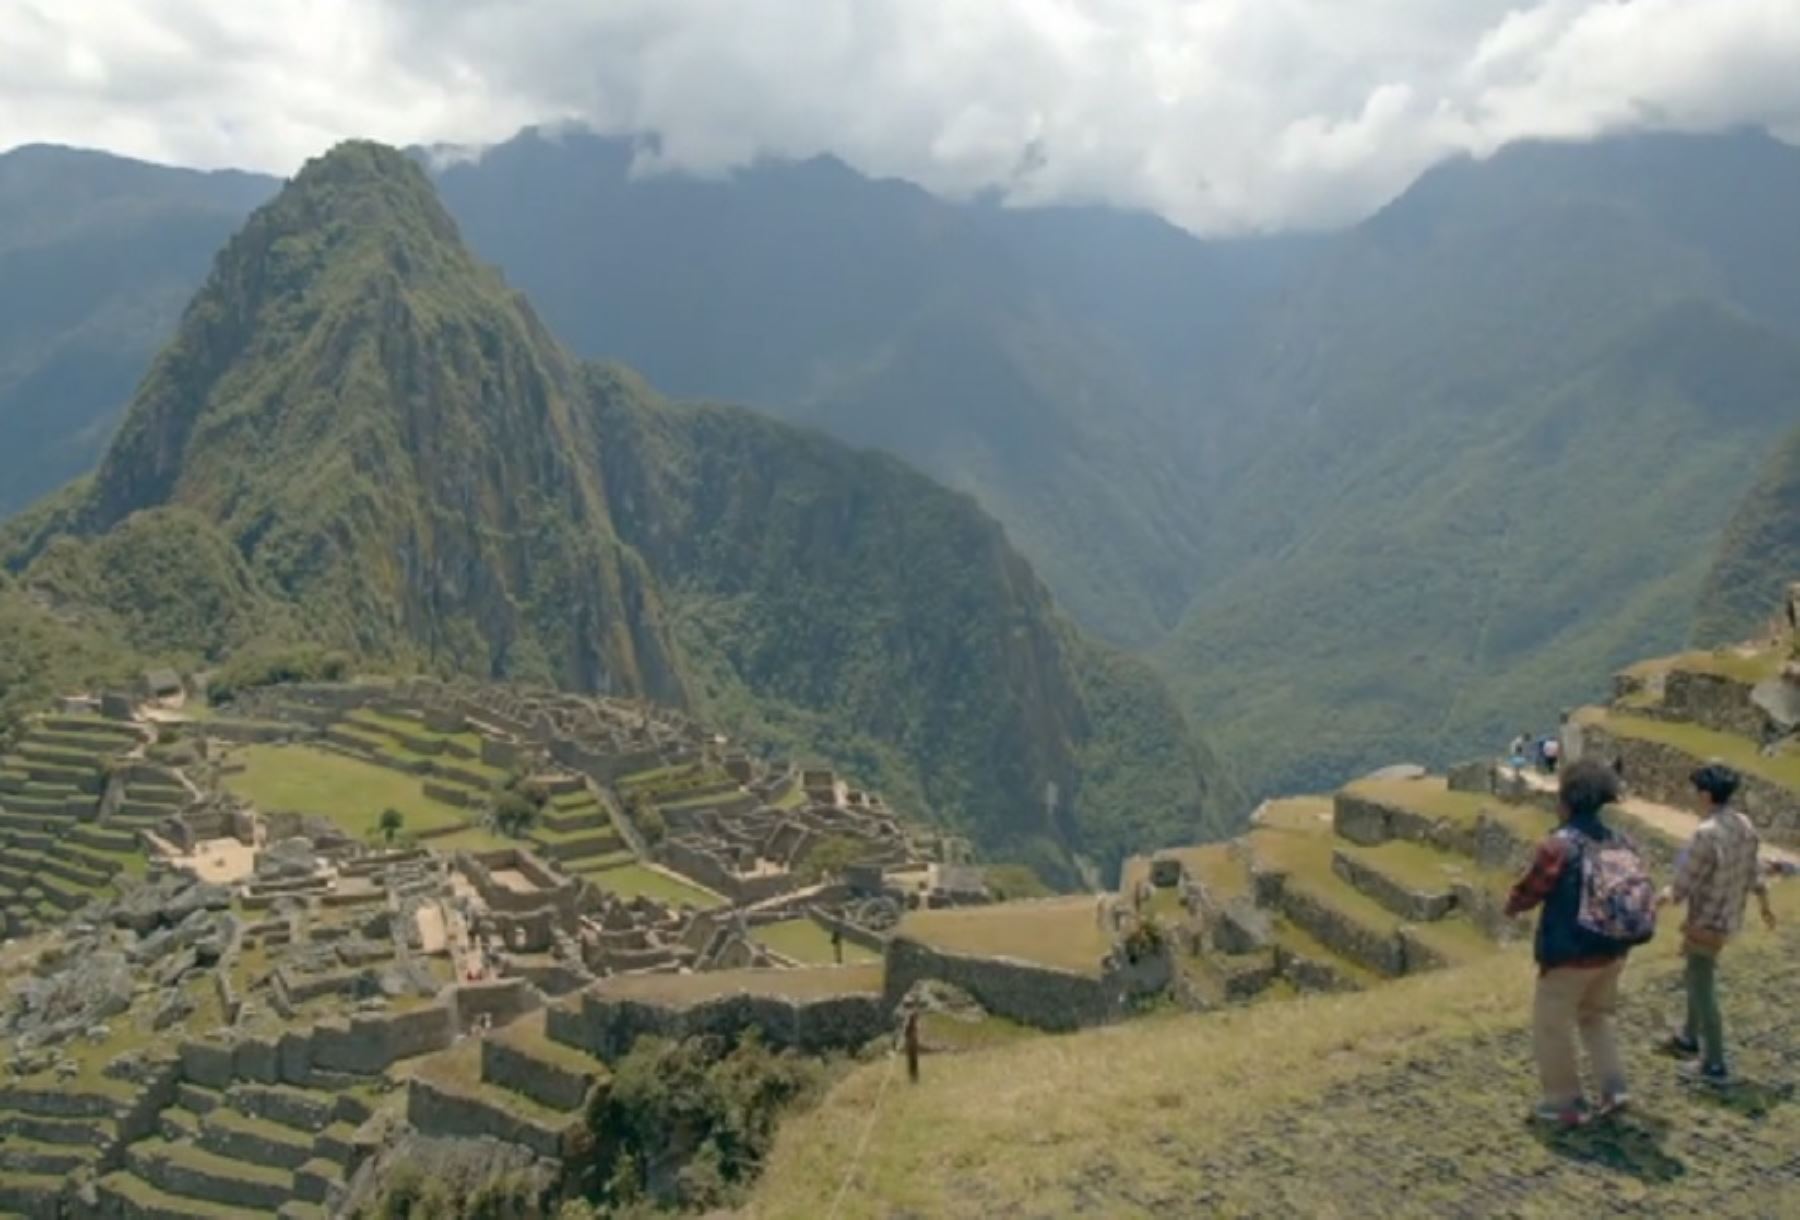 "Empieza tu aventura en Perú", la campaña internacional que lanzó Promperú el año pasado para promocionar la belleza de nuestro país al mundo entero está nominada a Mejor Video de Turismo del Mundo en los CIFFT People